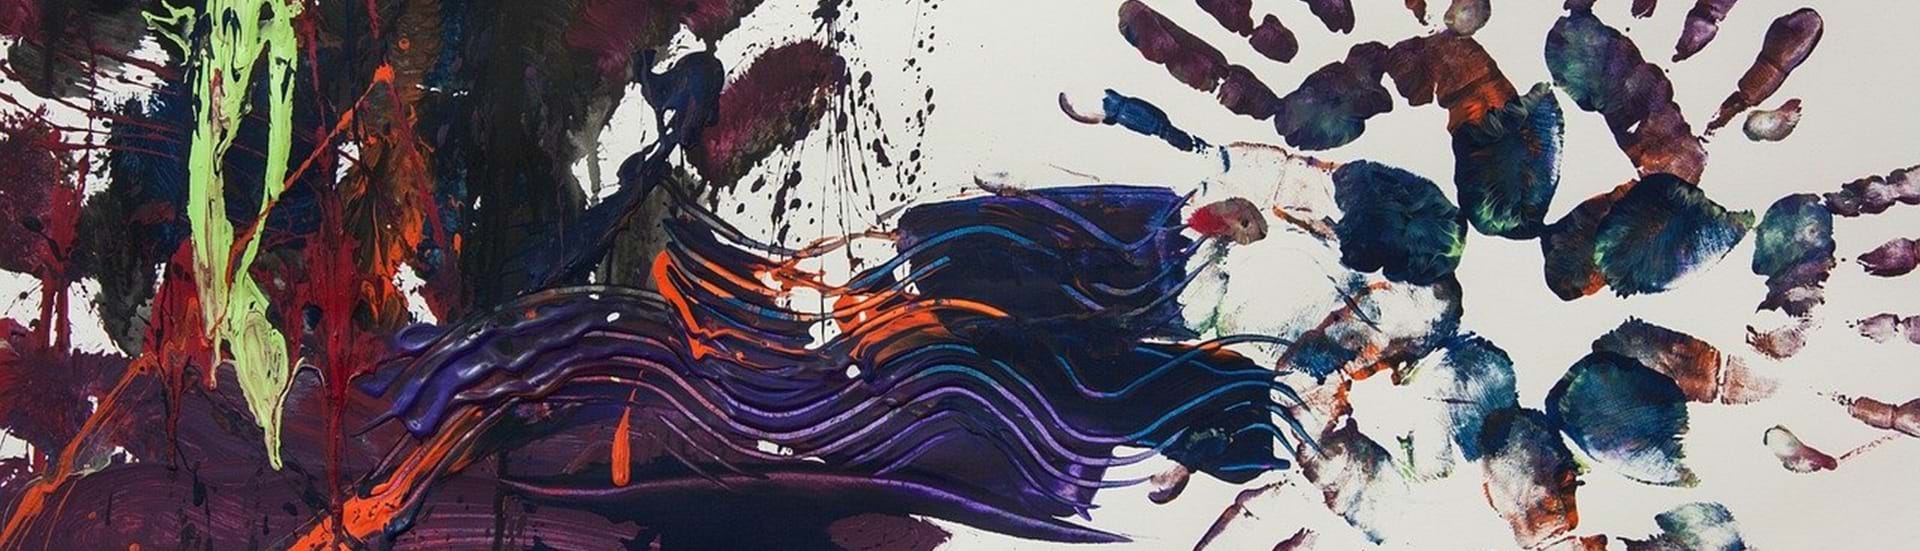 Abstrakt maleri i mærke farver med aftryk af hænder ude i højre side.